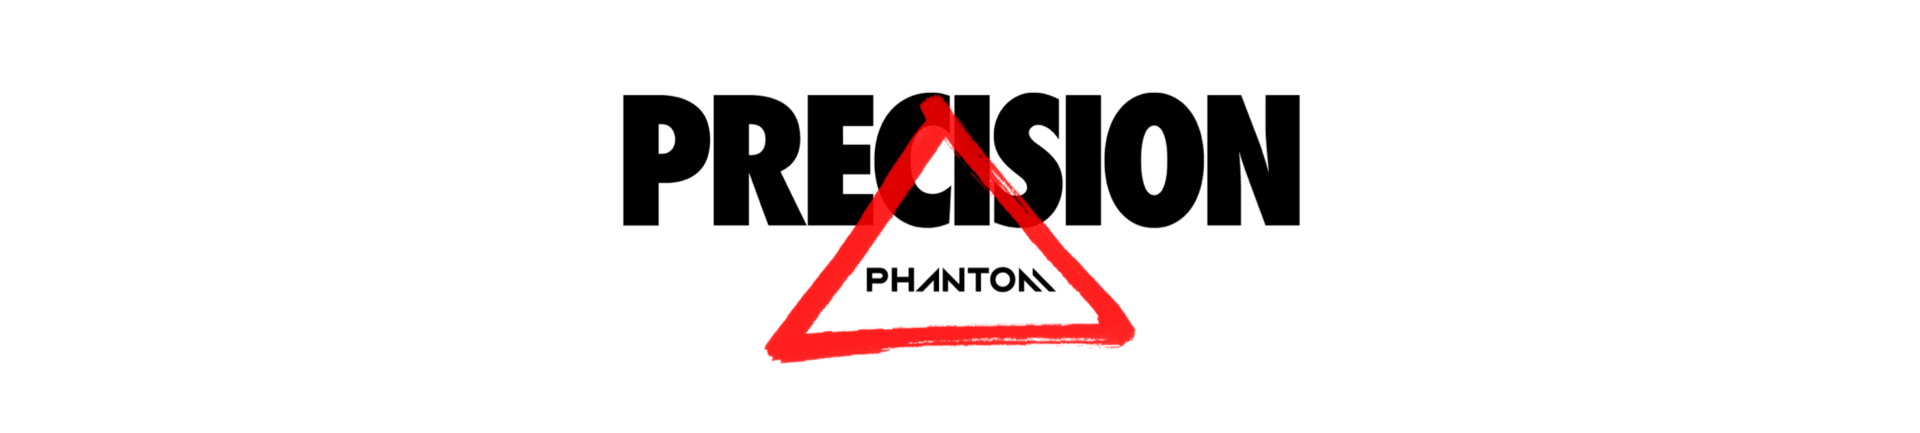 phantom precision nike